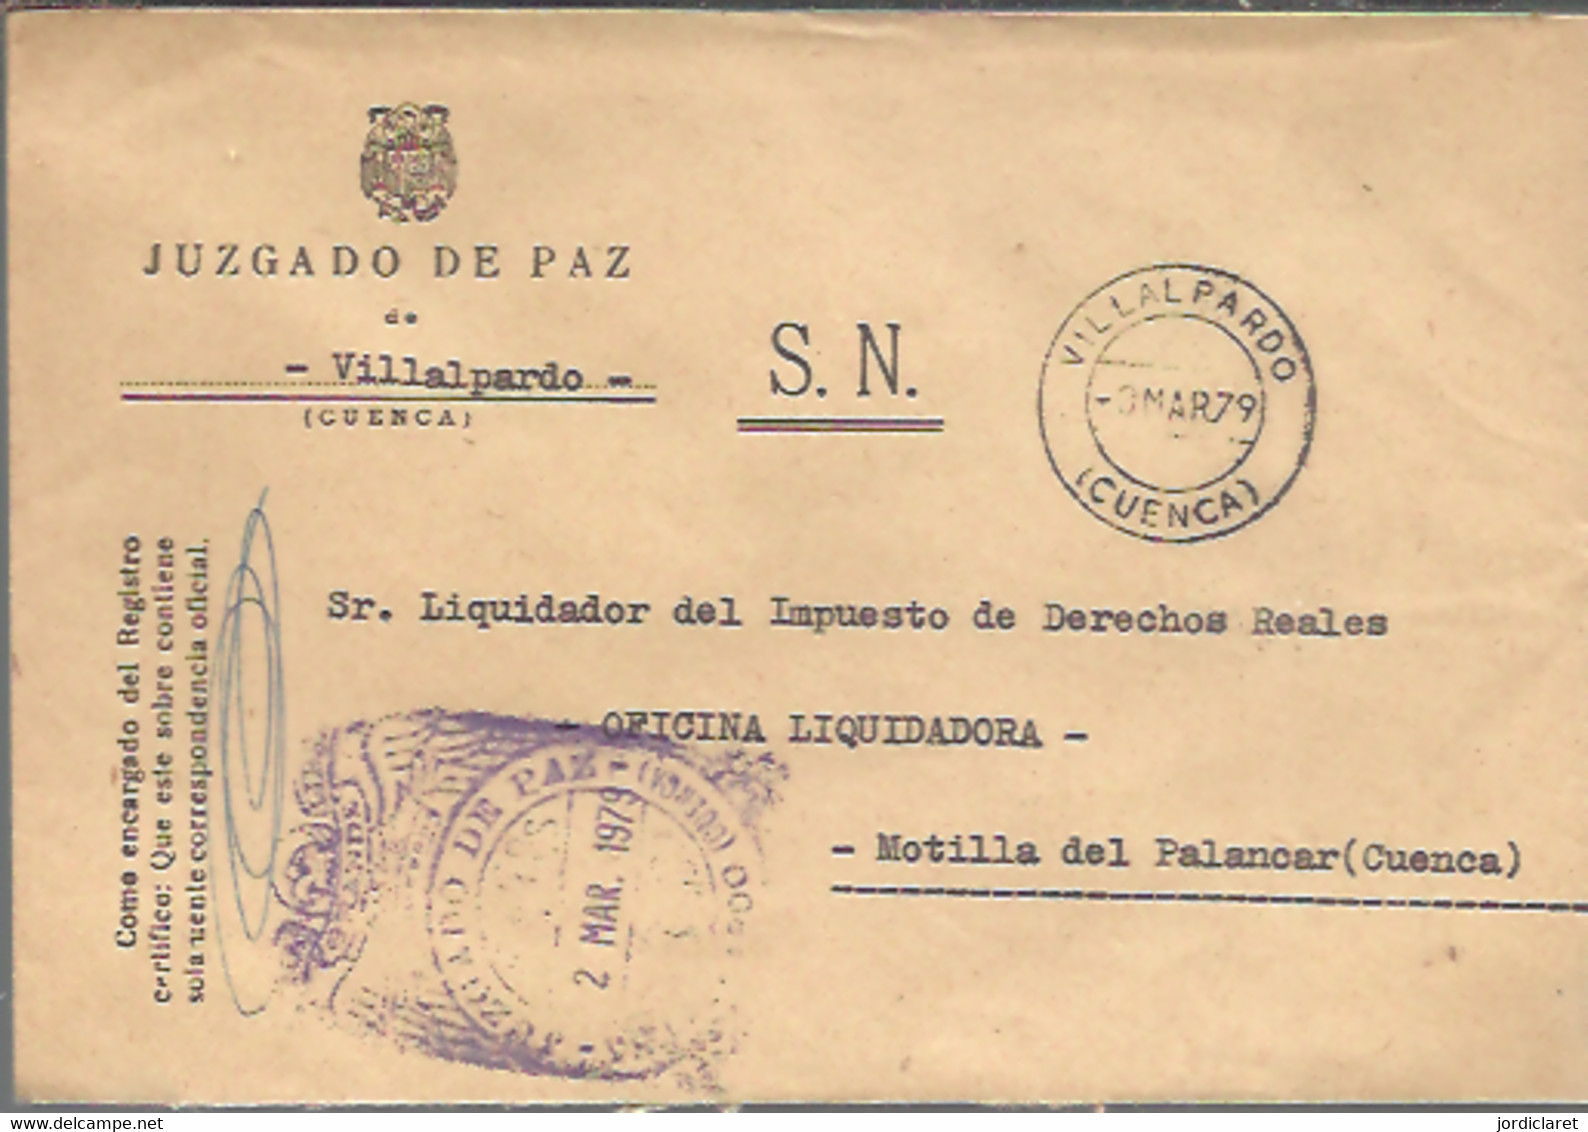 MARCA  JUZGADO DE PAZ VILLAPARDO  CUENCA 1979 - Franquicia Postal